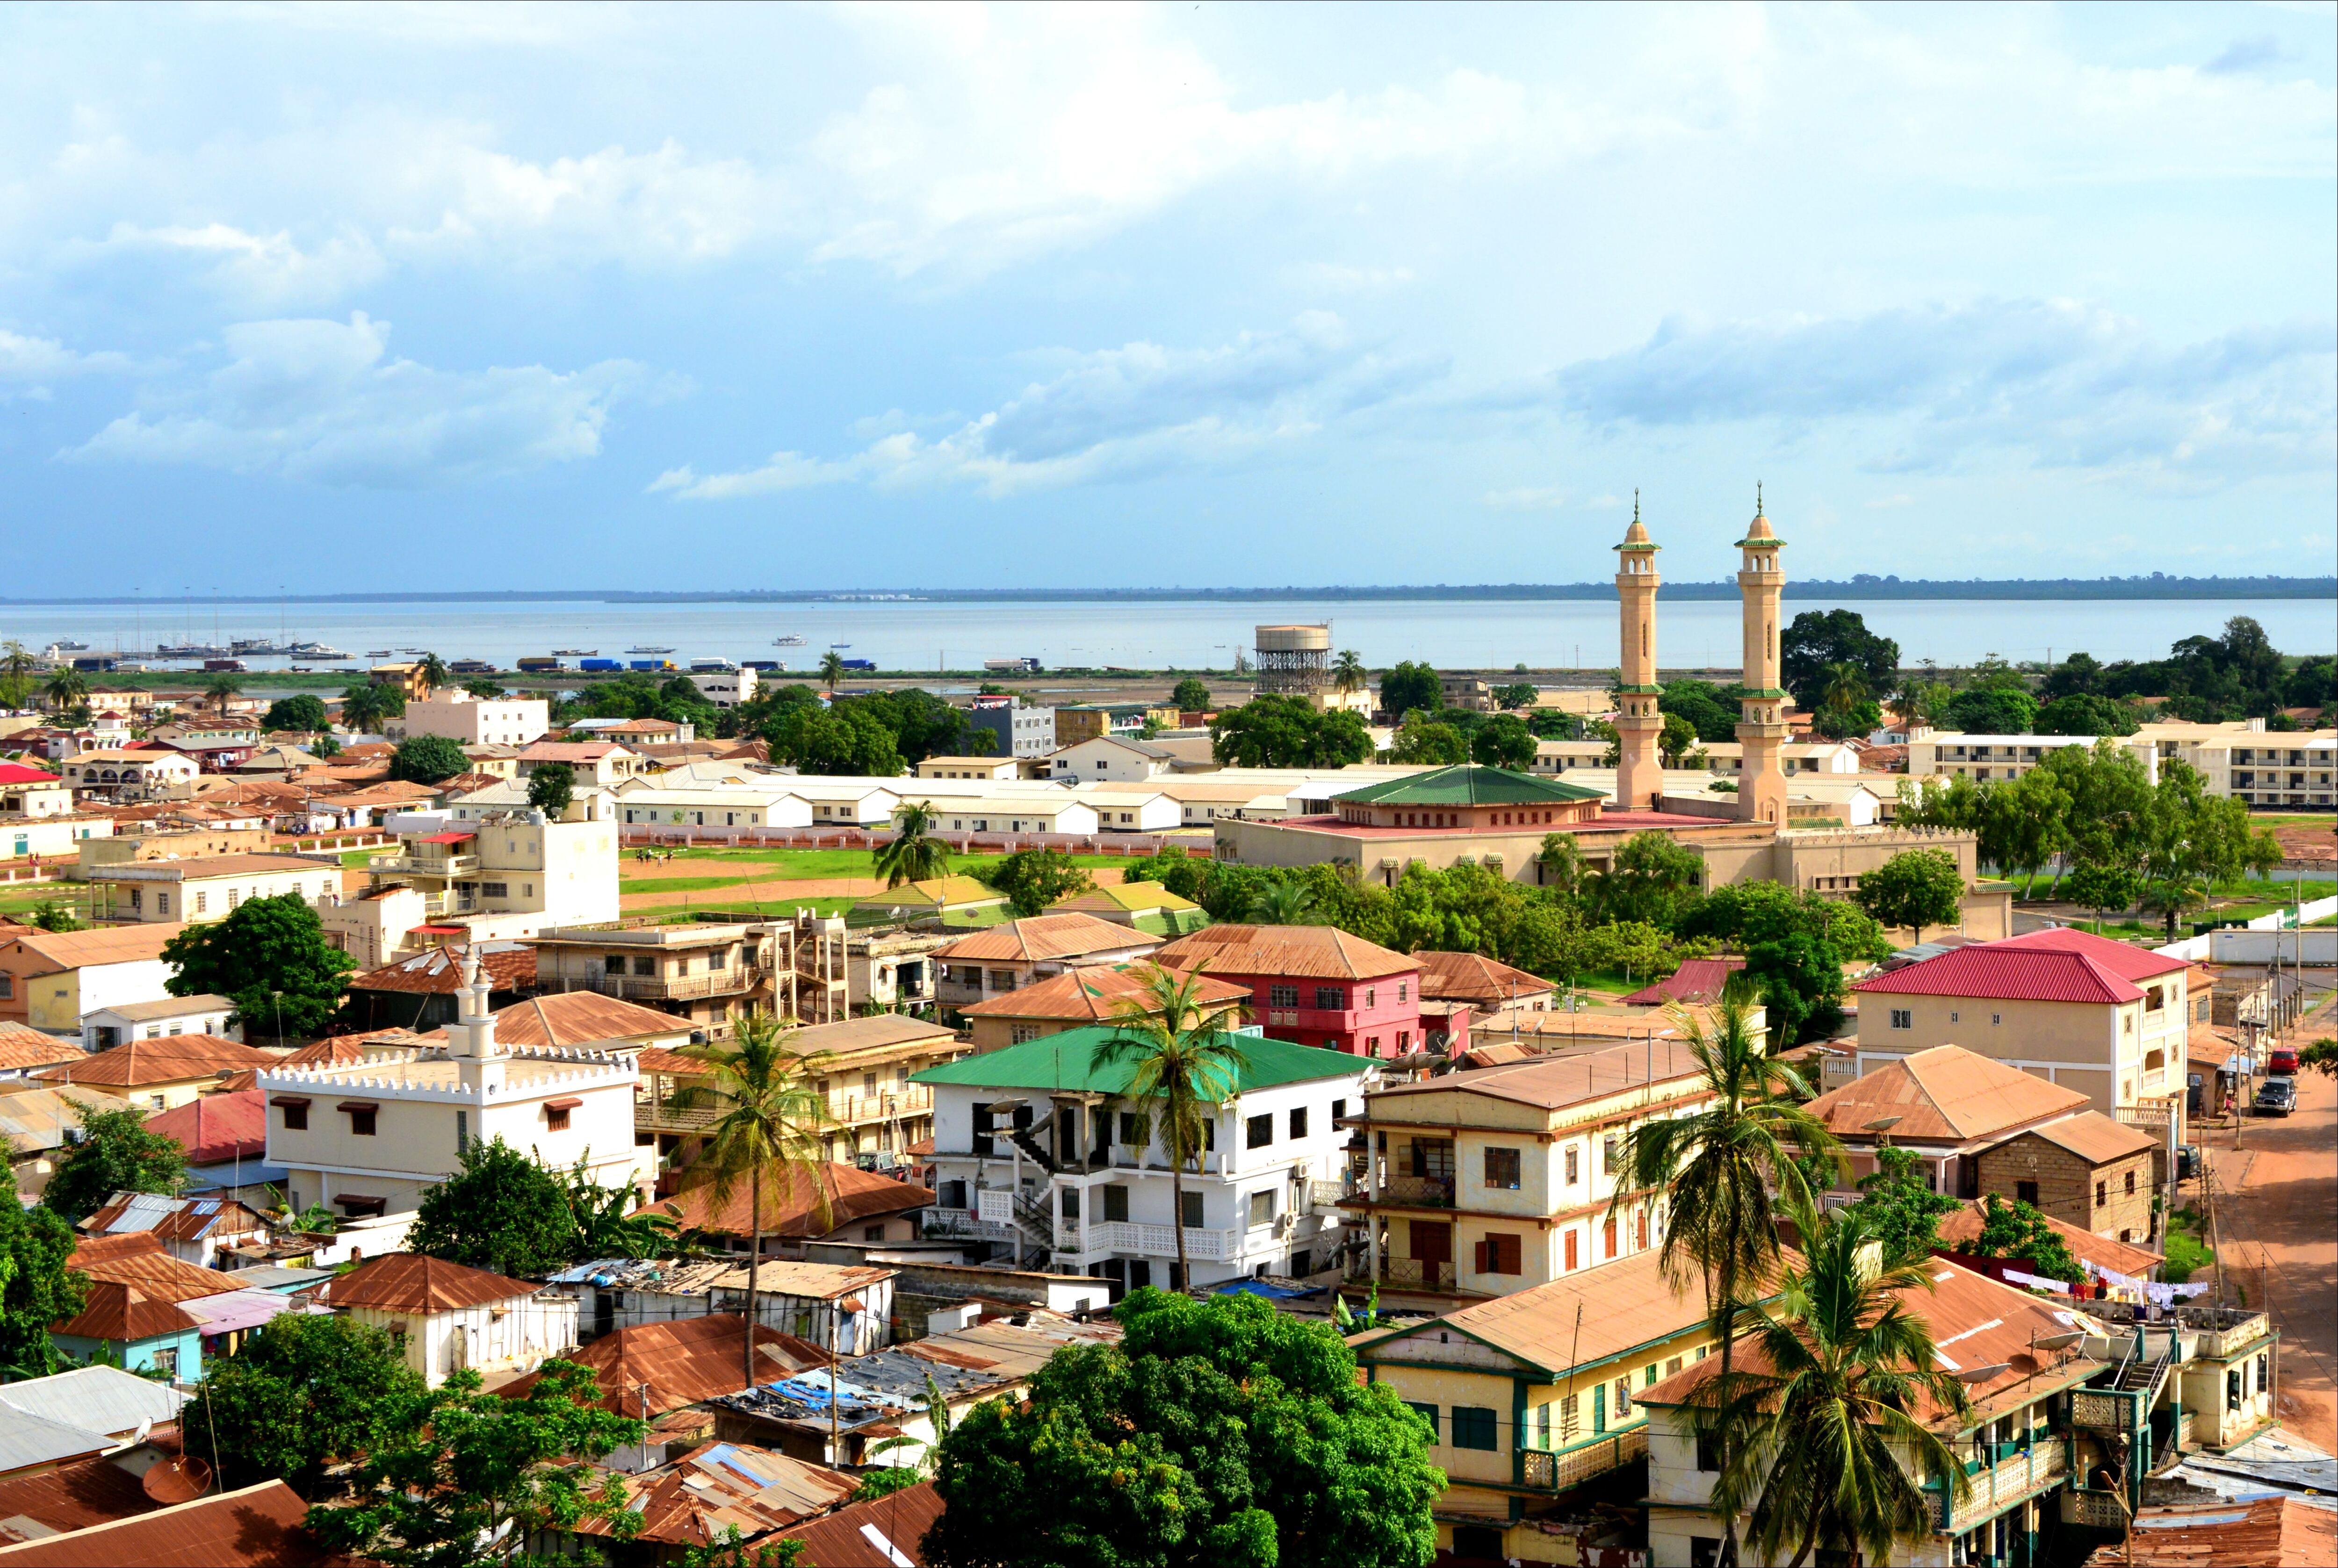 Vista de la ciudad de Banjul, capital de Gambia.